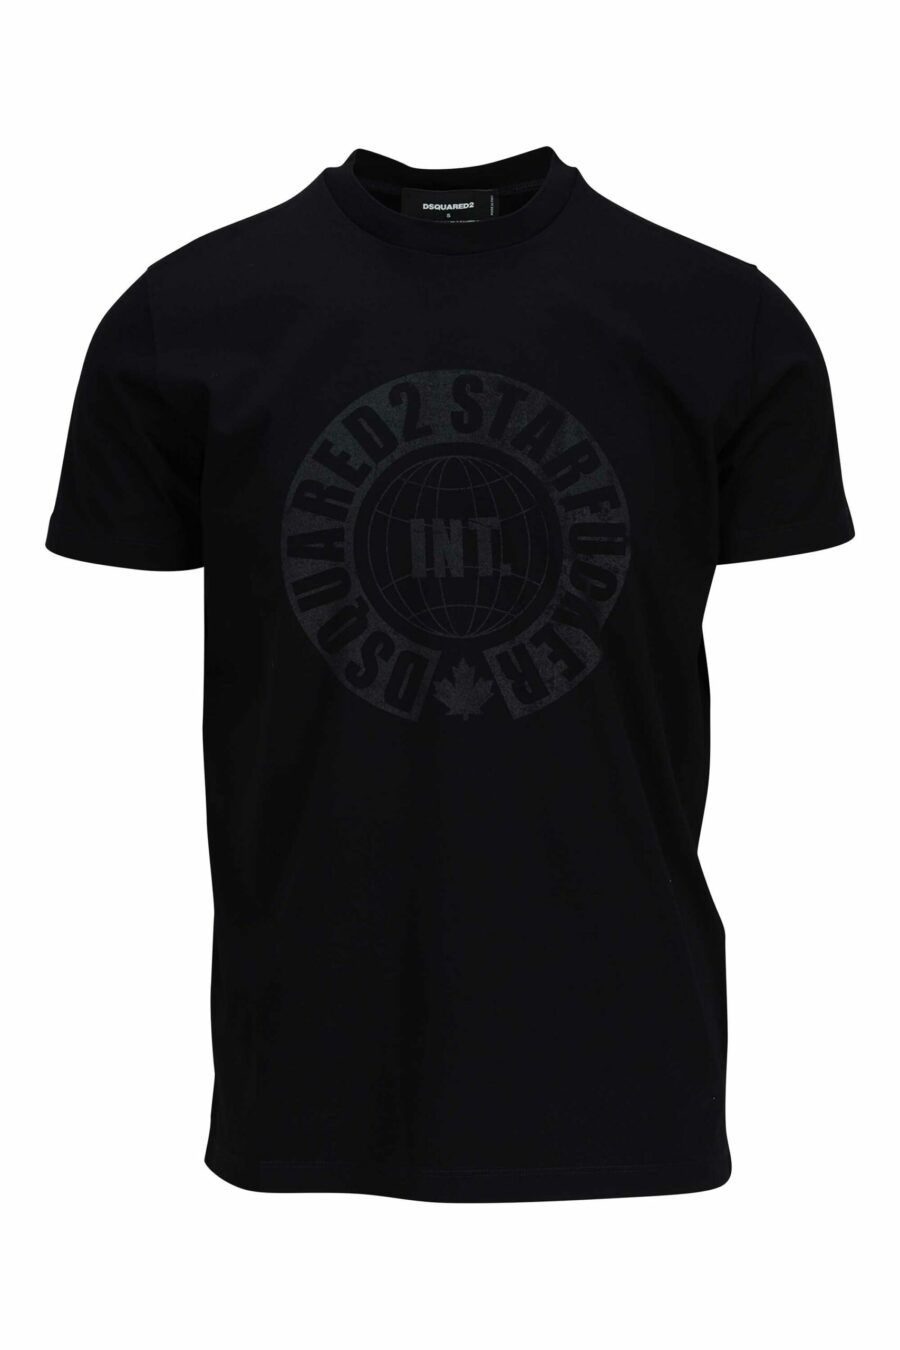 Schwarzes T-Shirt mit rundem einfarbigem Maxilogo - 8054148086091 skaliert